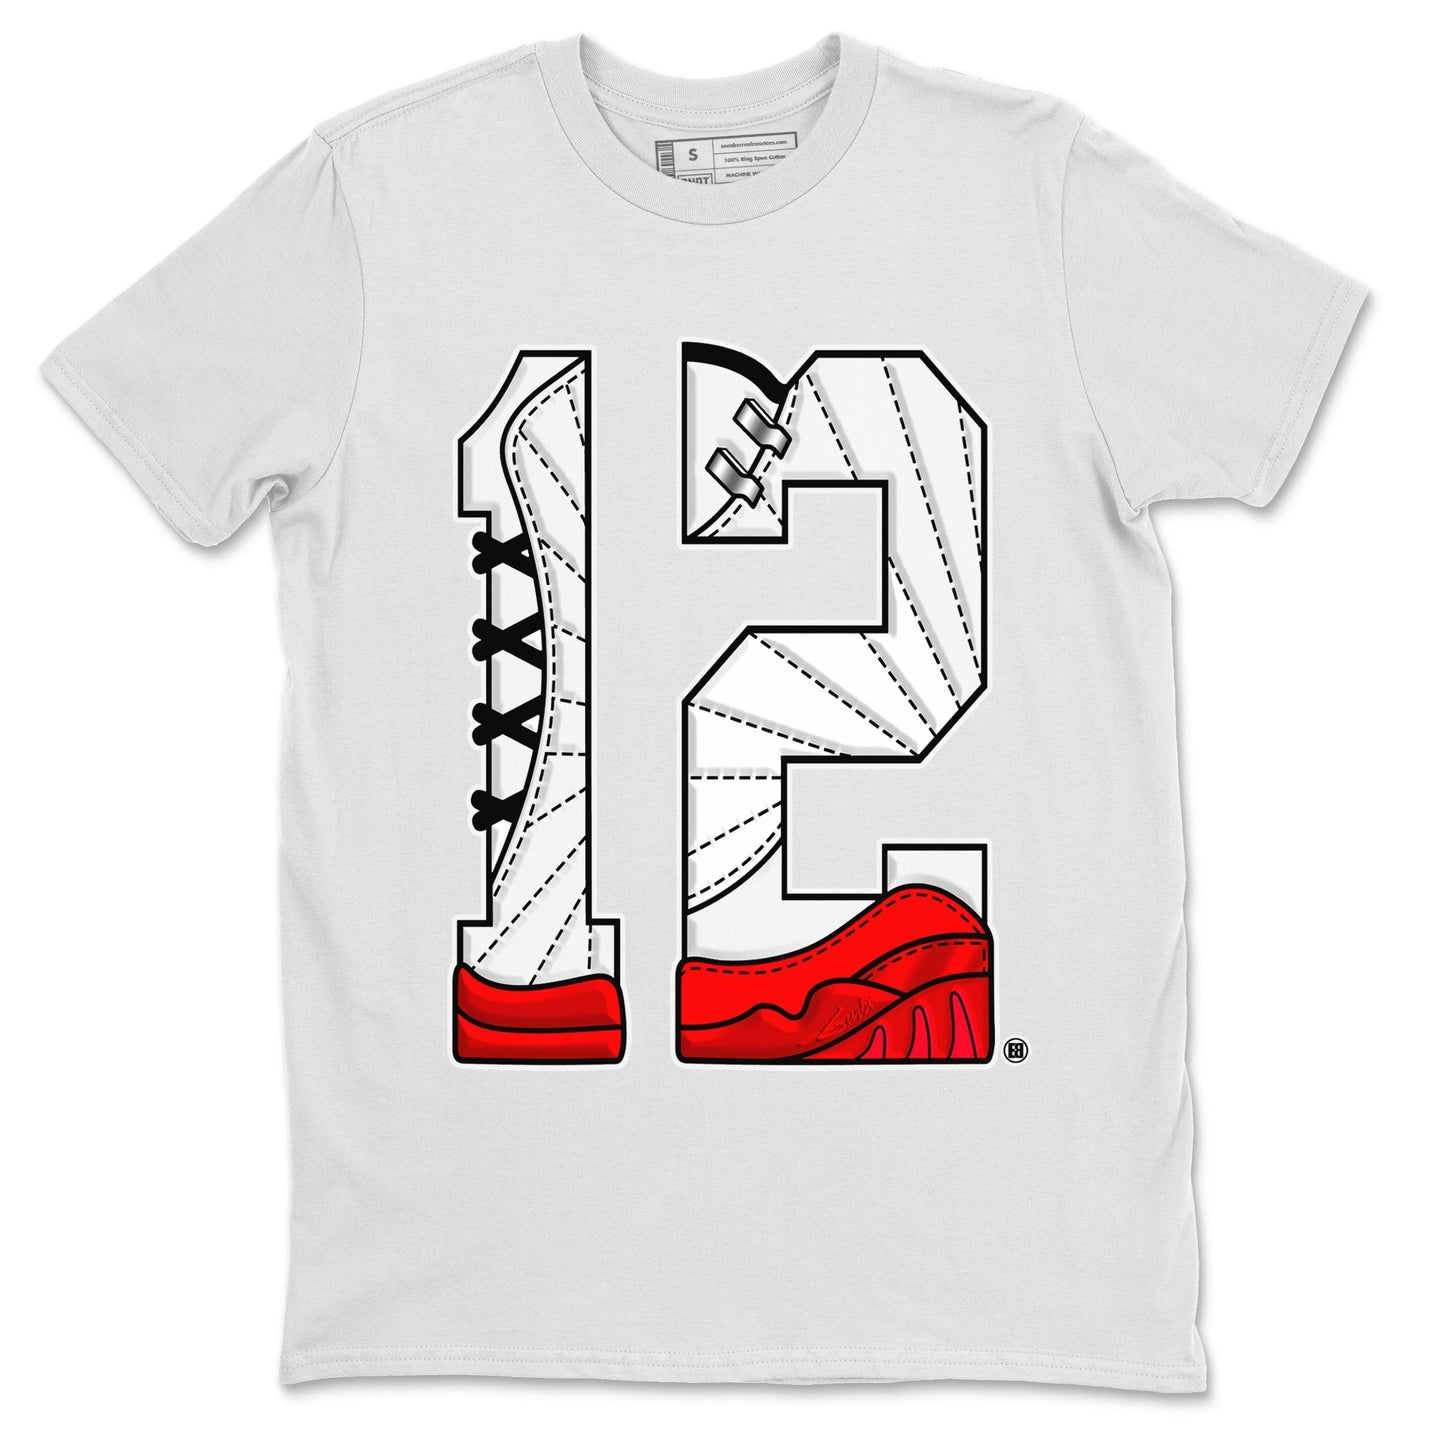 12s Cherry Sneaker Match Tees Number 12 Sneaker Tees Air Jordan 12 Cherry Sneaker Release Tees Unisex Shirts White 2